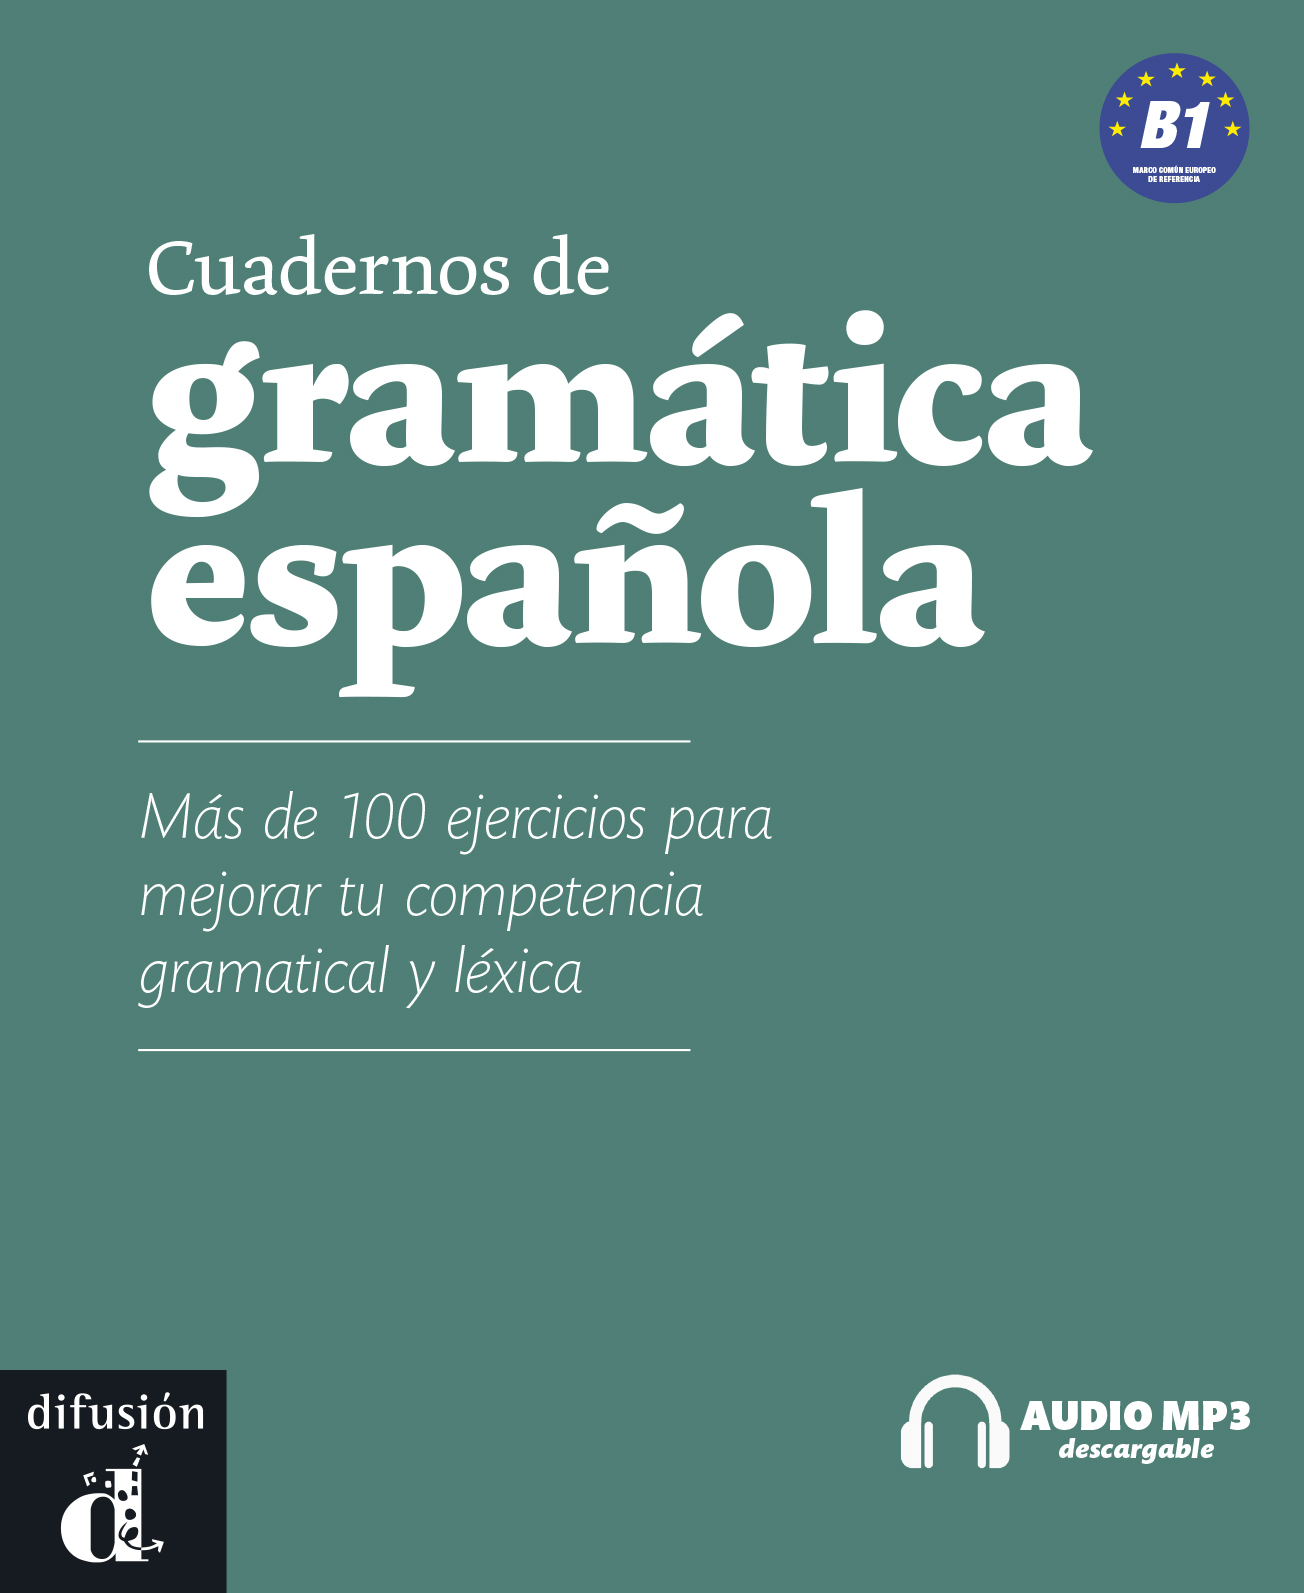 Cuadernos de gramática espanola 3